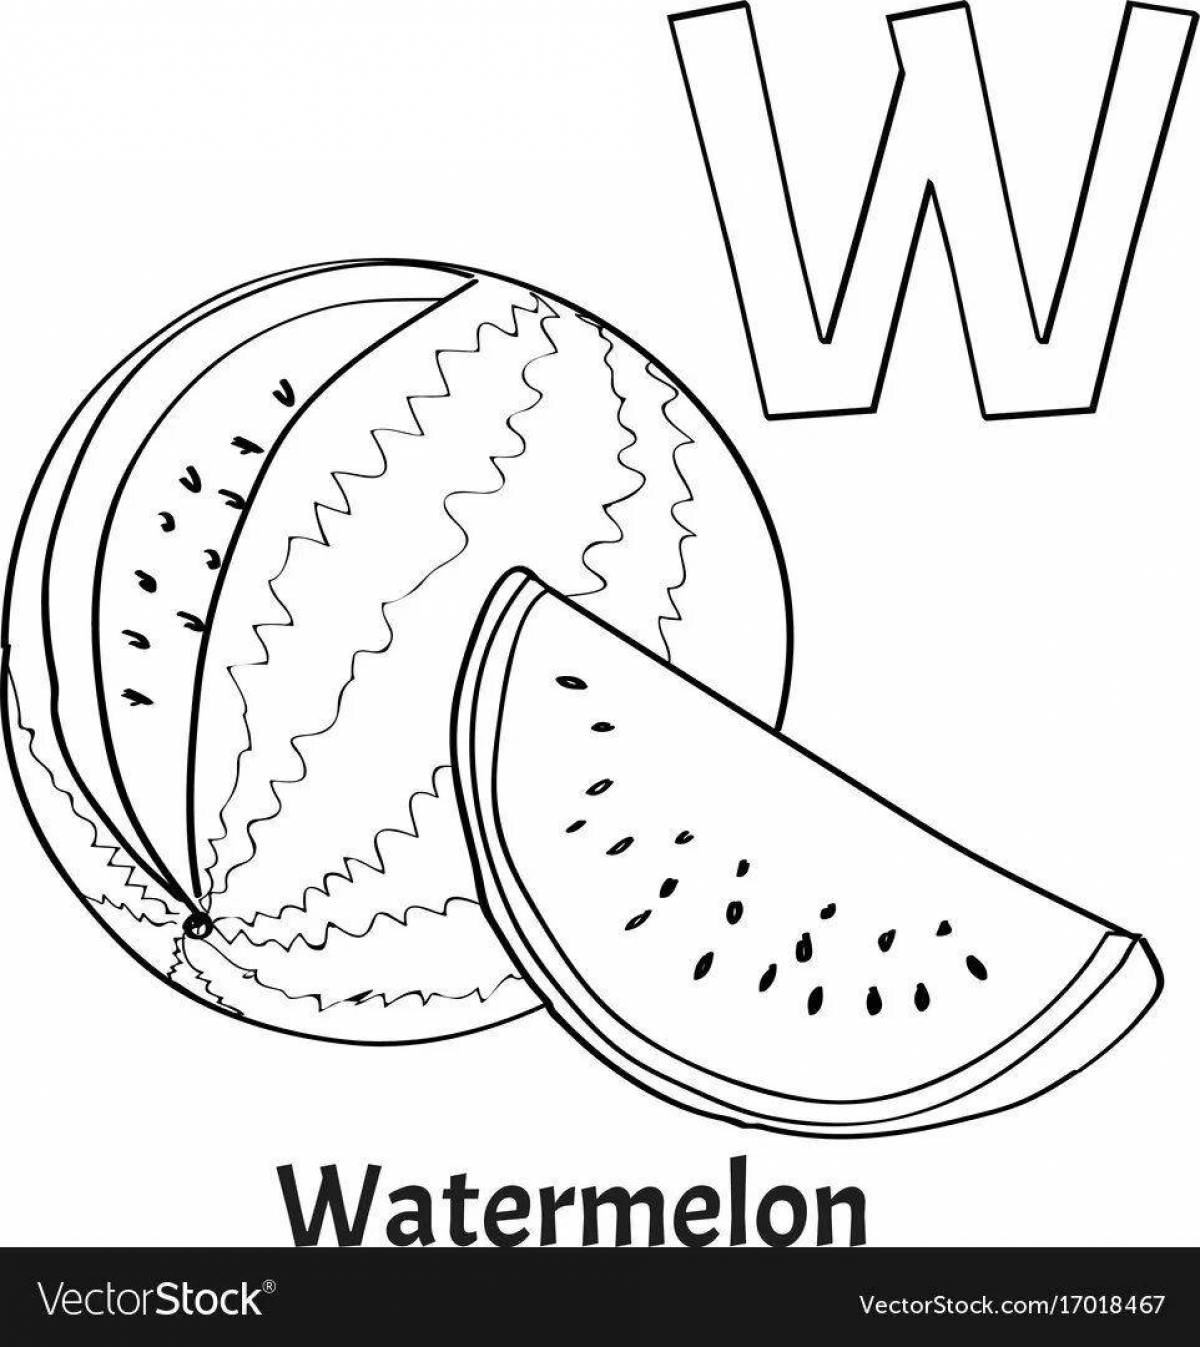 Bright watermelon a coloring book